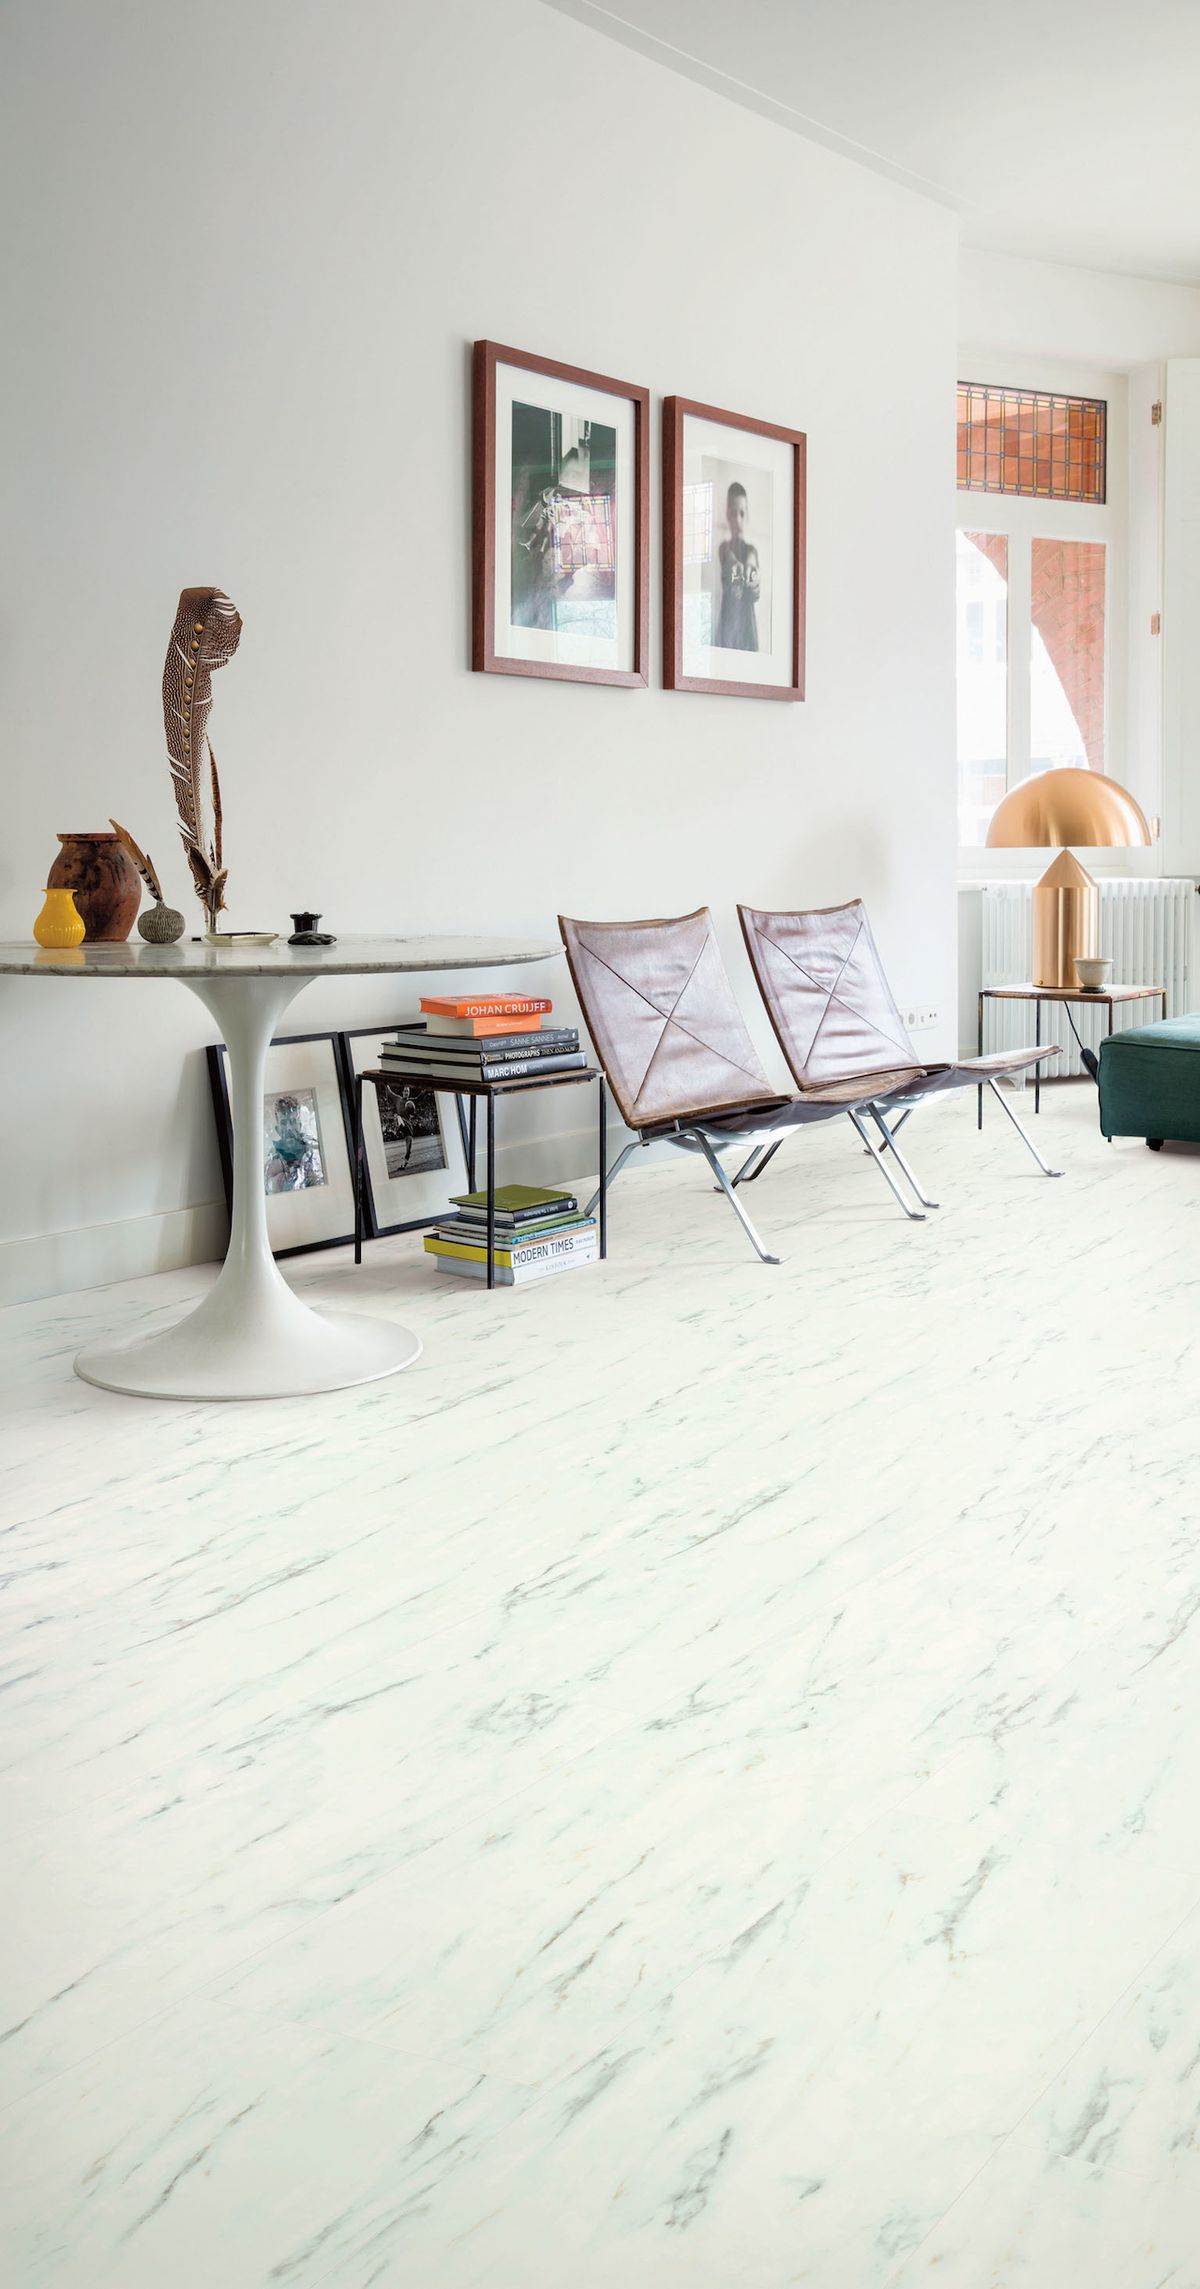 Vinylová podlaha, která imituje mramor. Provedení dlažby bílé. Vhodná do minimalistického prostoru.